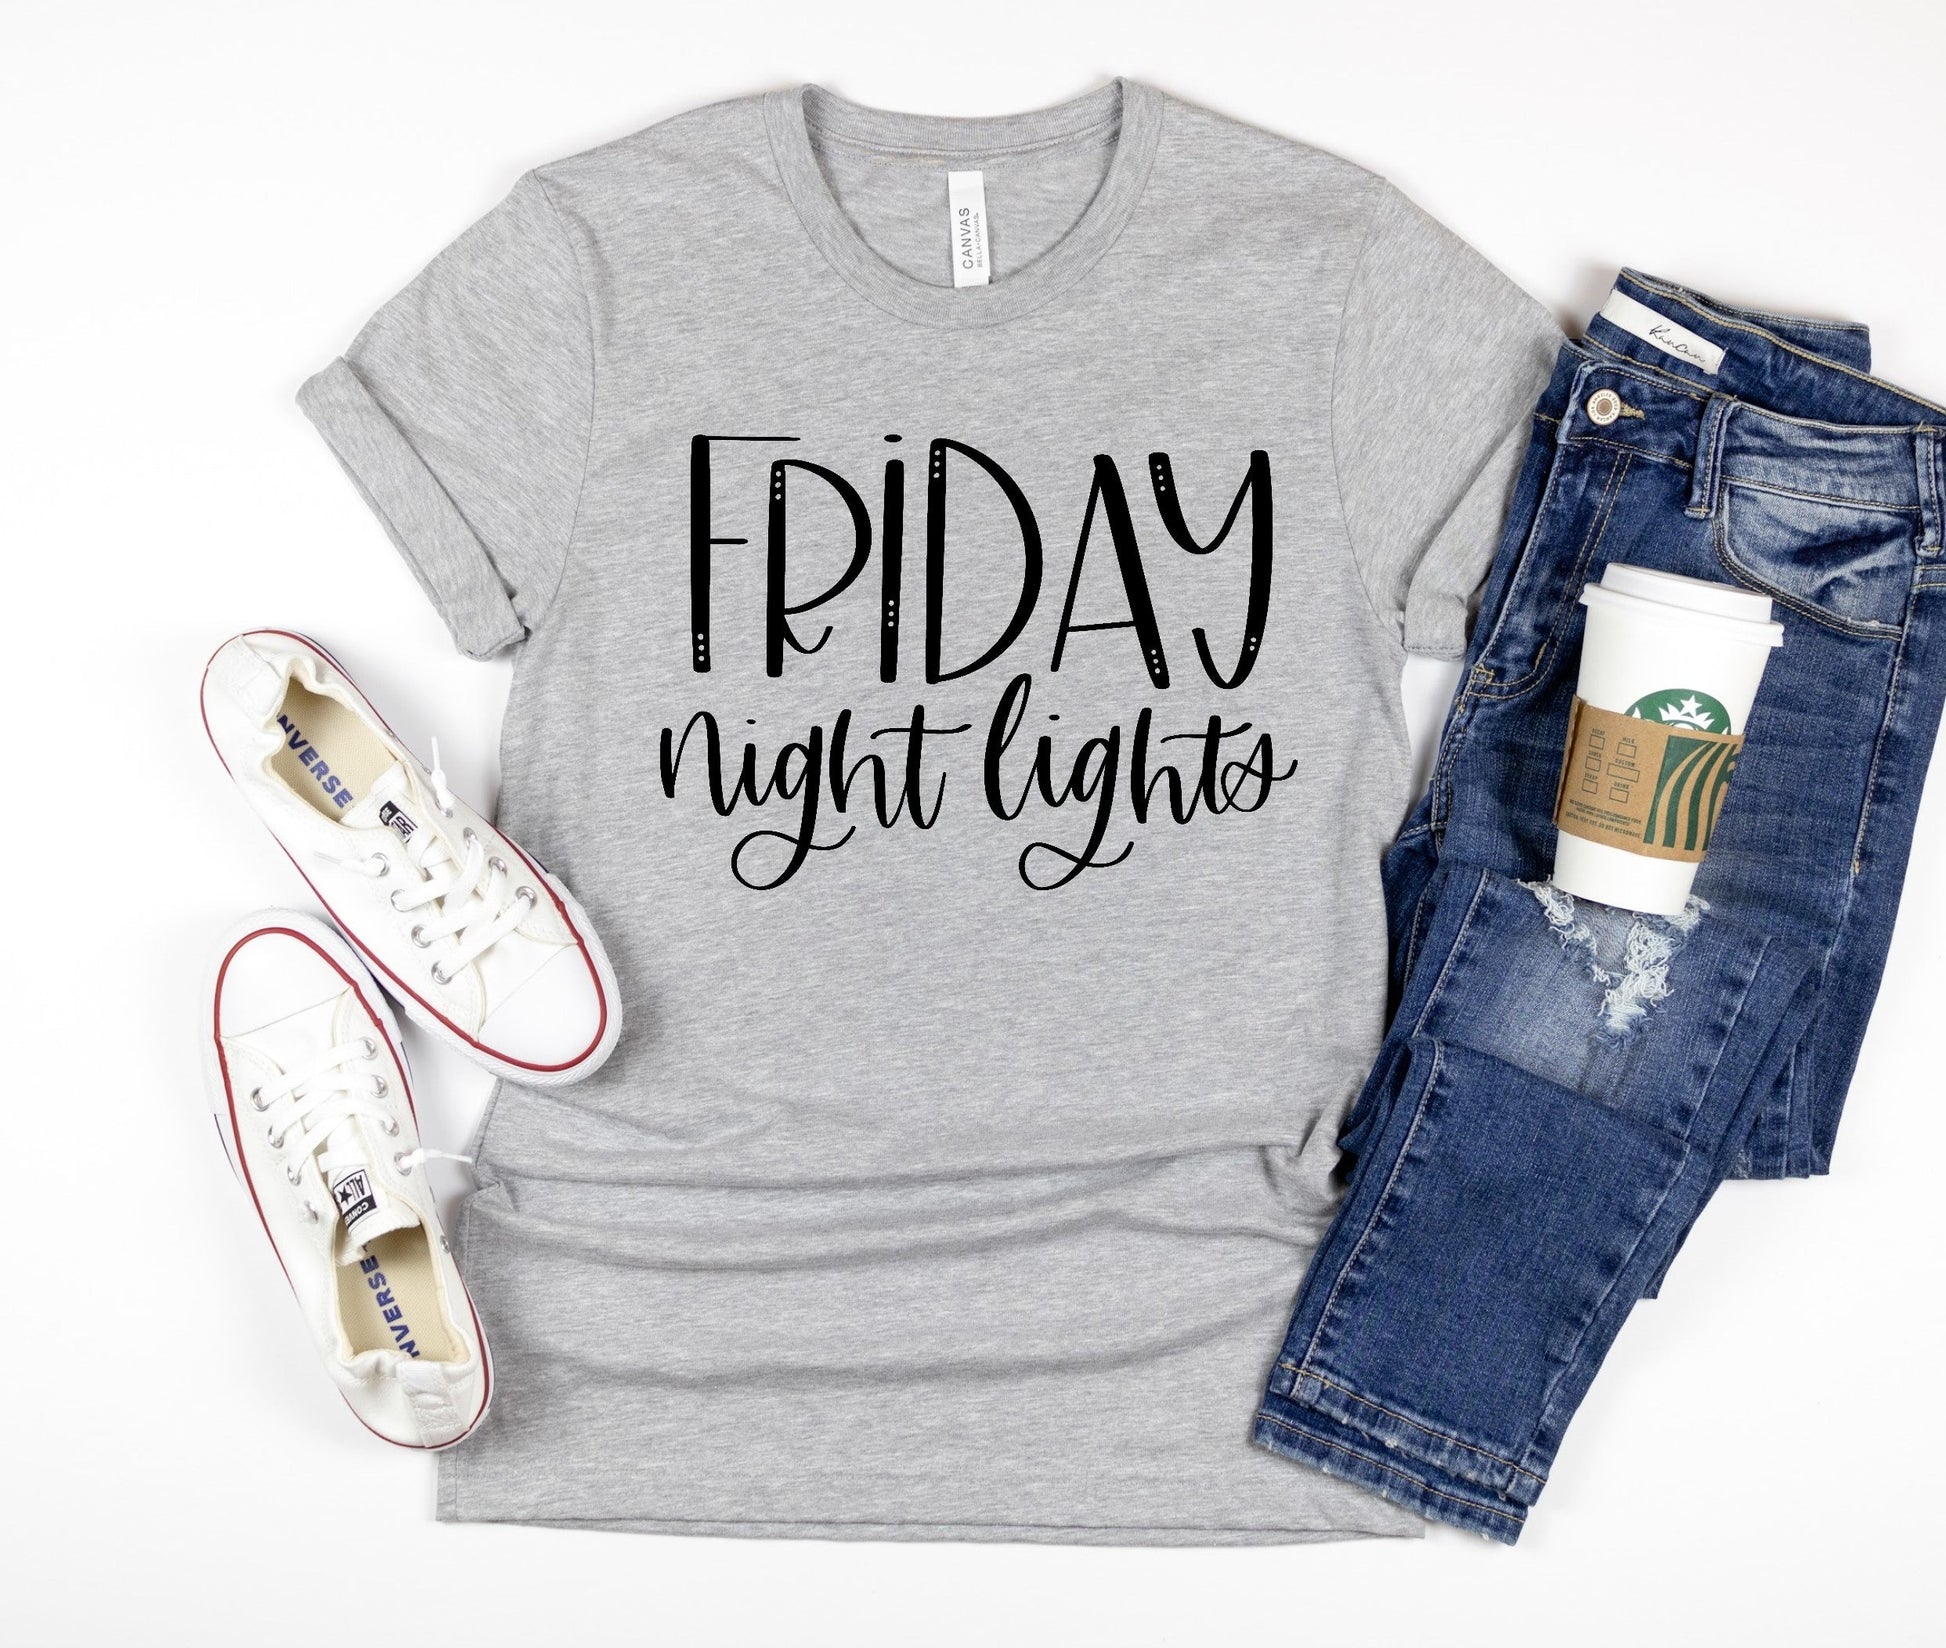 Friday Night Lights Tshirt, Fall TShirt, Football Shirt - Premium T-Shirt - Just $21.50! Shop now at Nine Thirty Nine Design